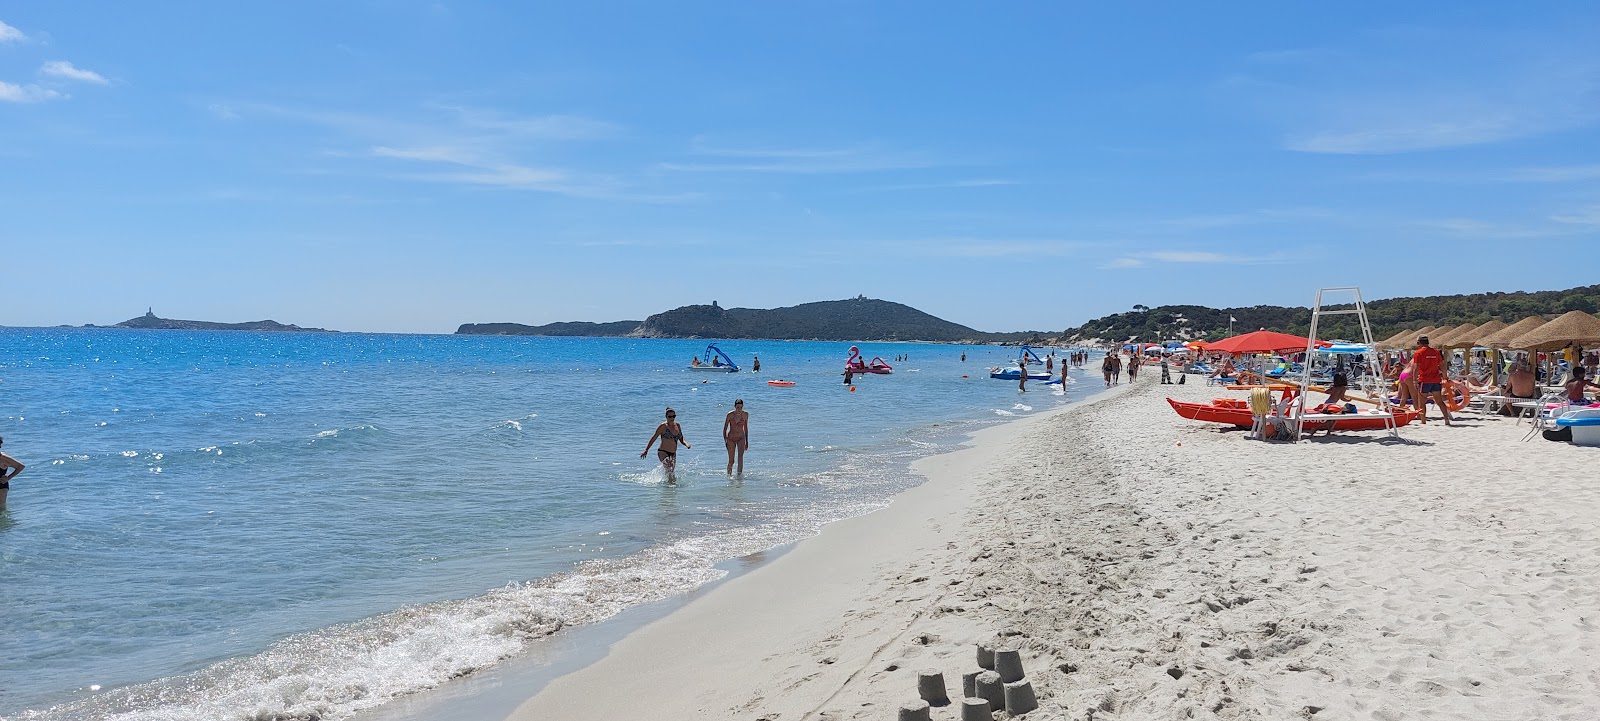 Foto de Spiaggia di Simius con recta y larga